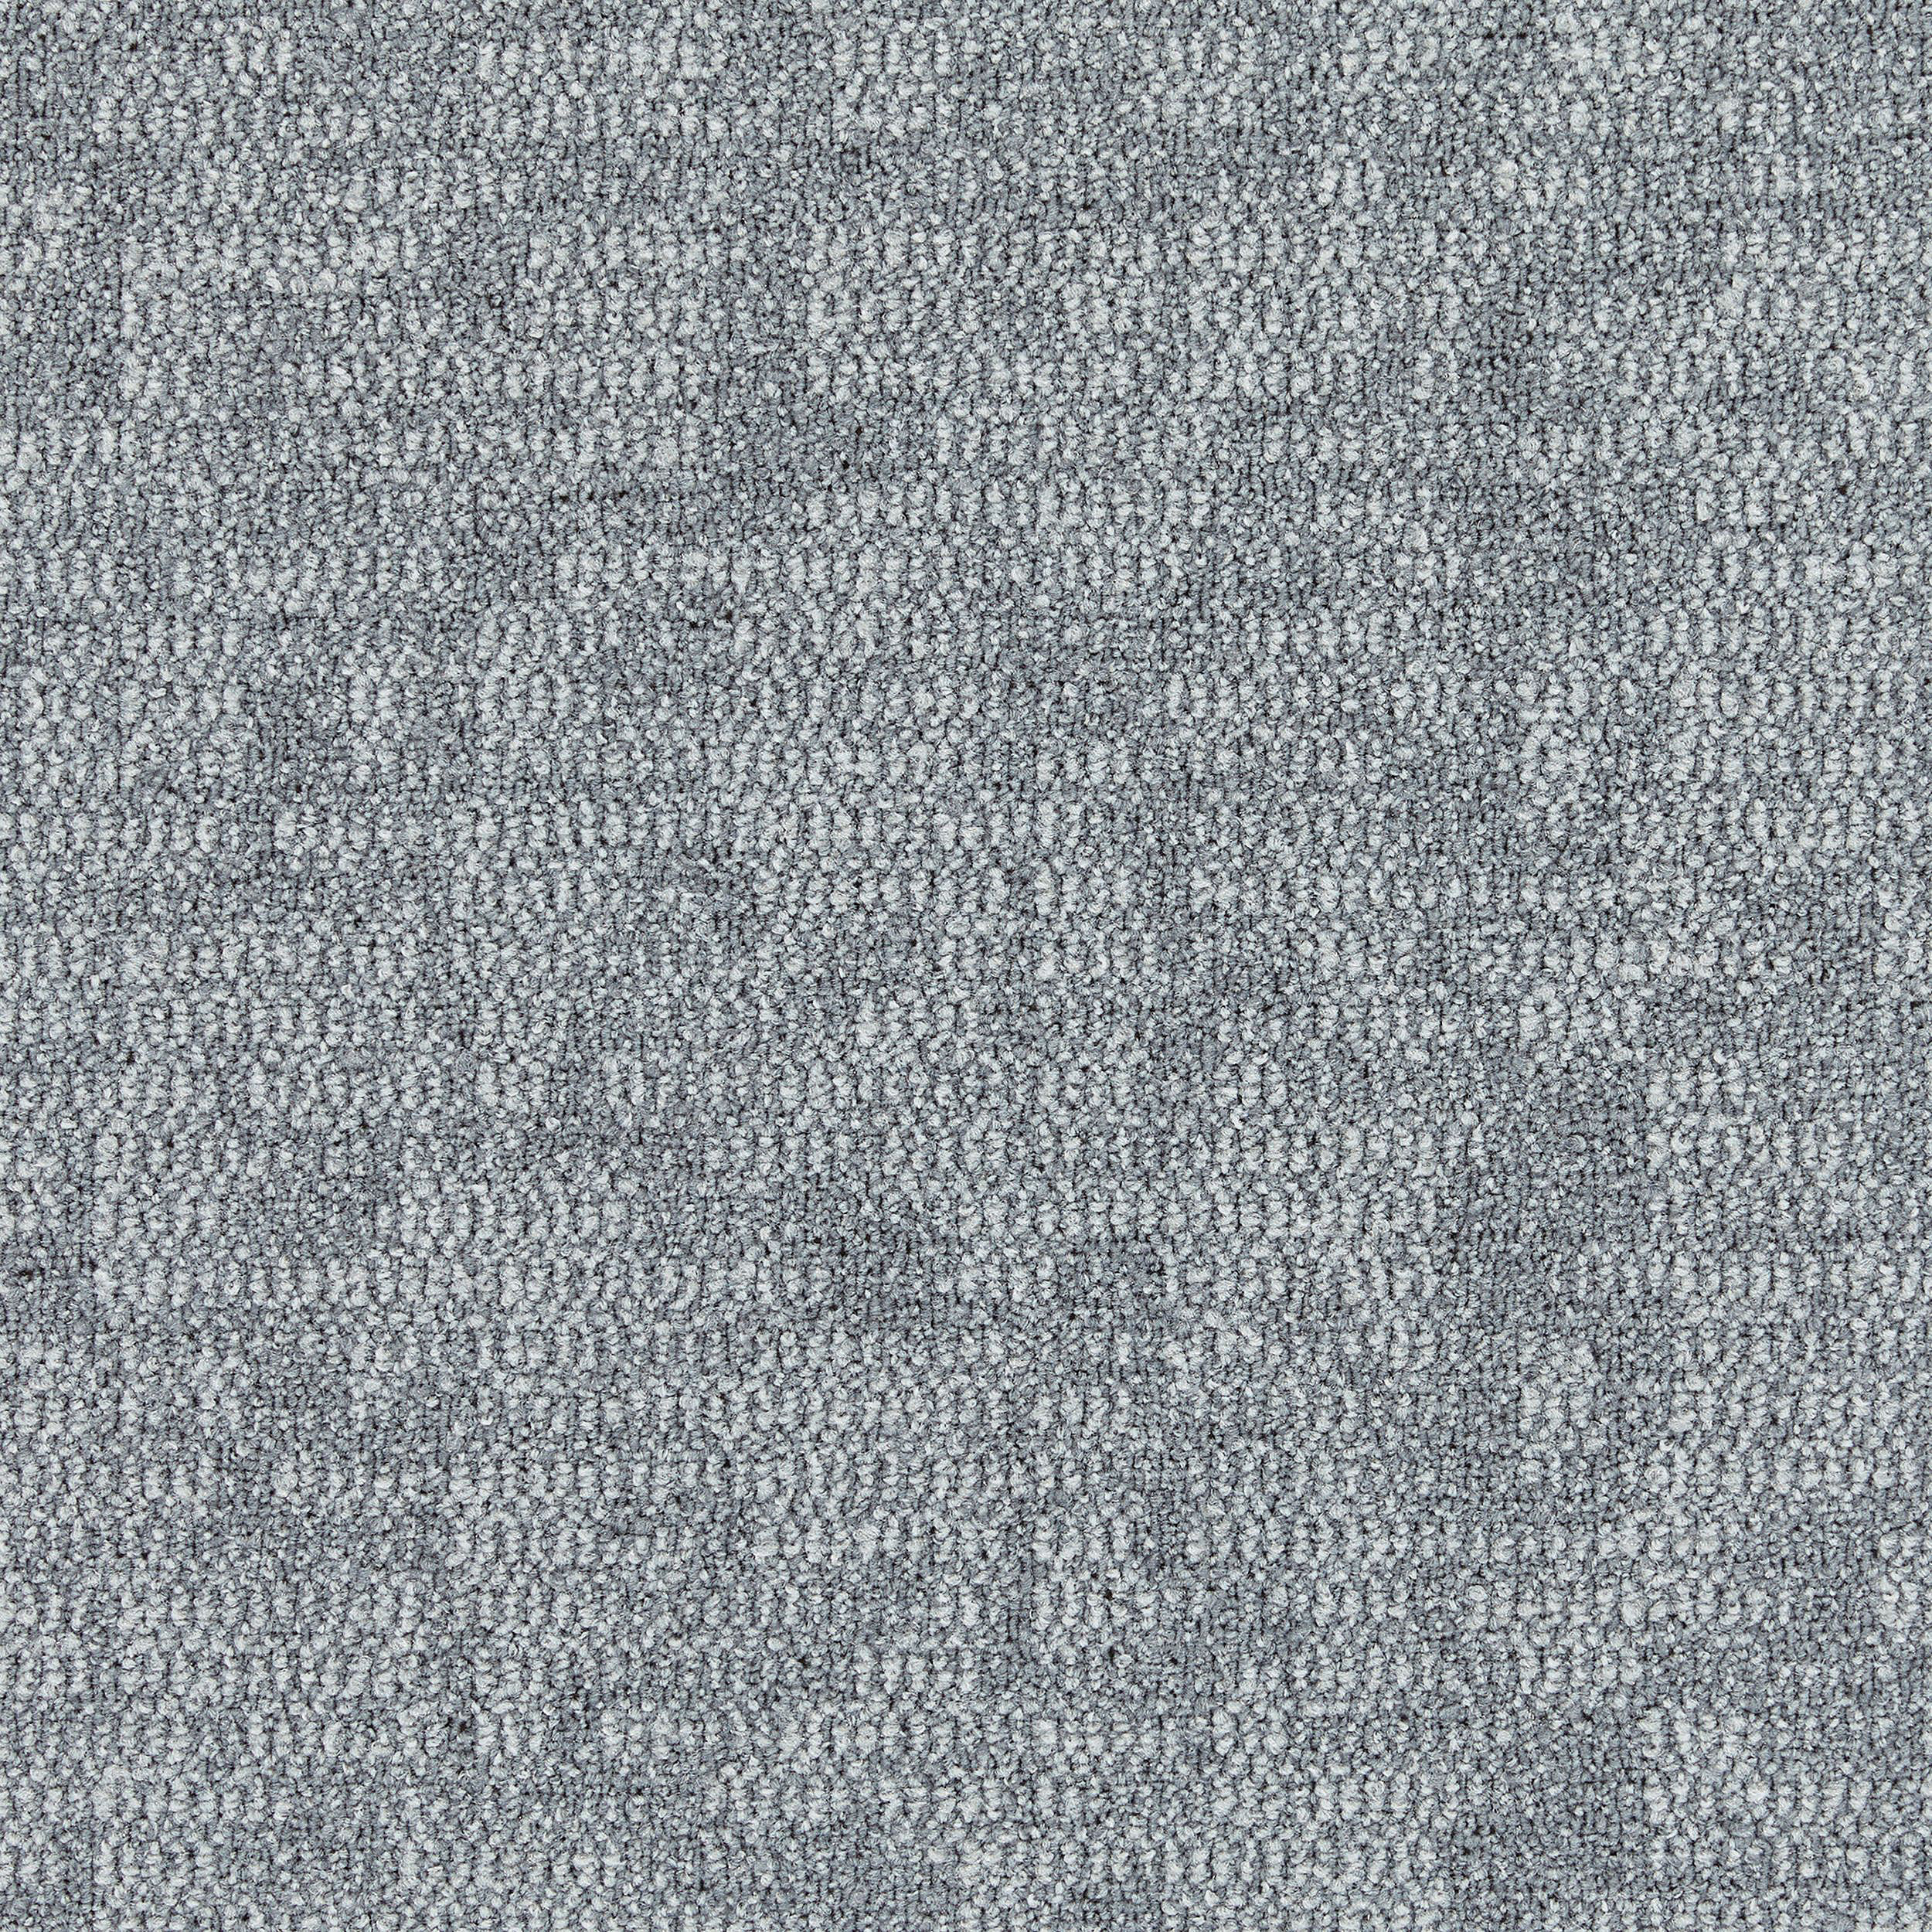 Yuton 106 Carpet Tile In Pearl afbeeldingnummer 3